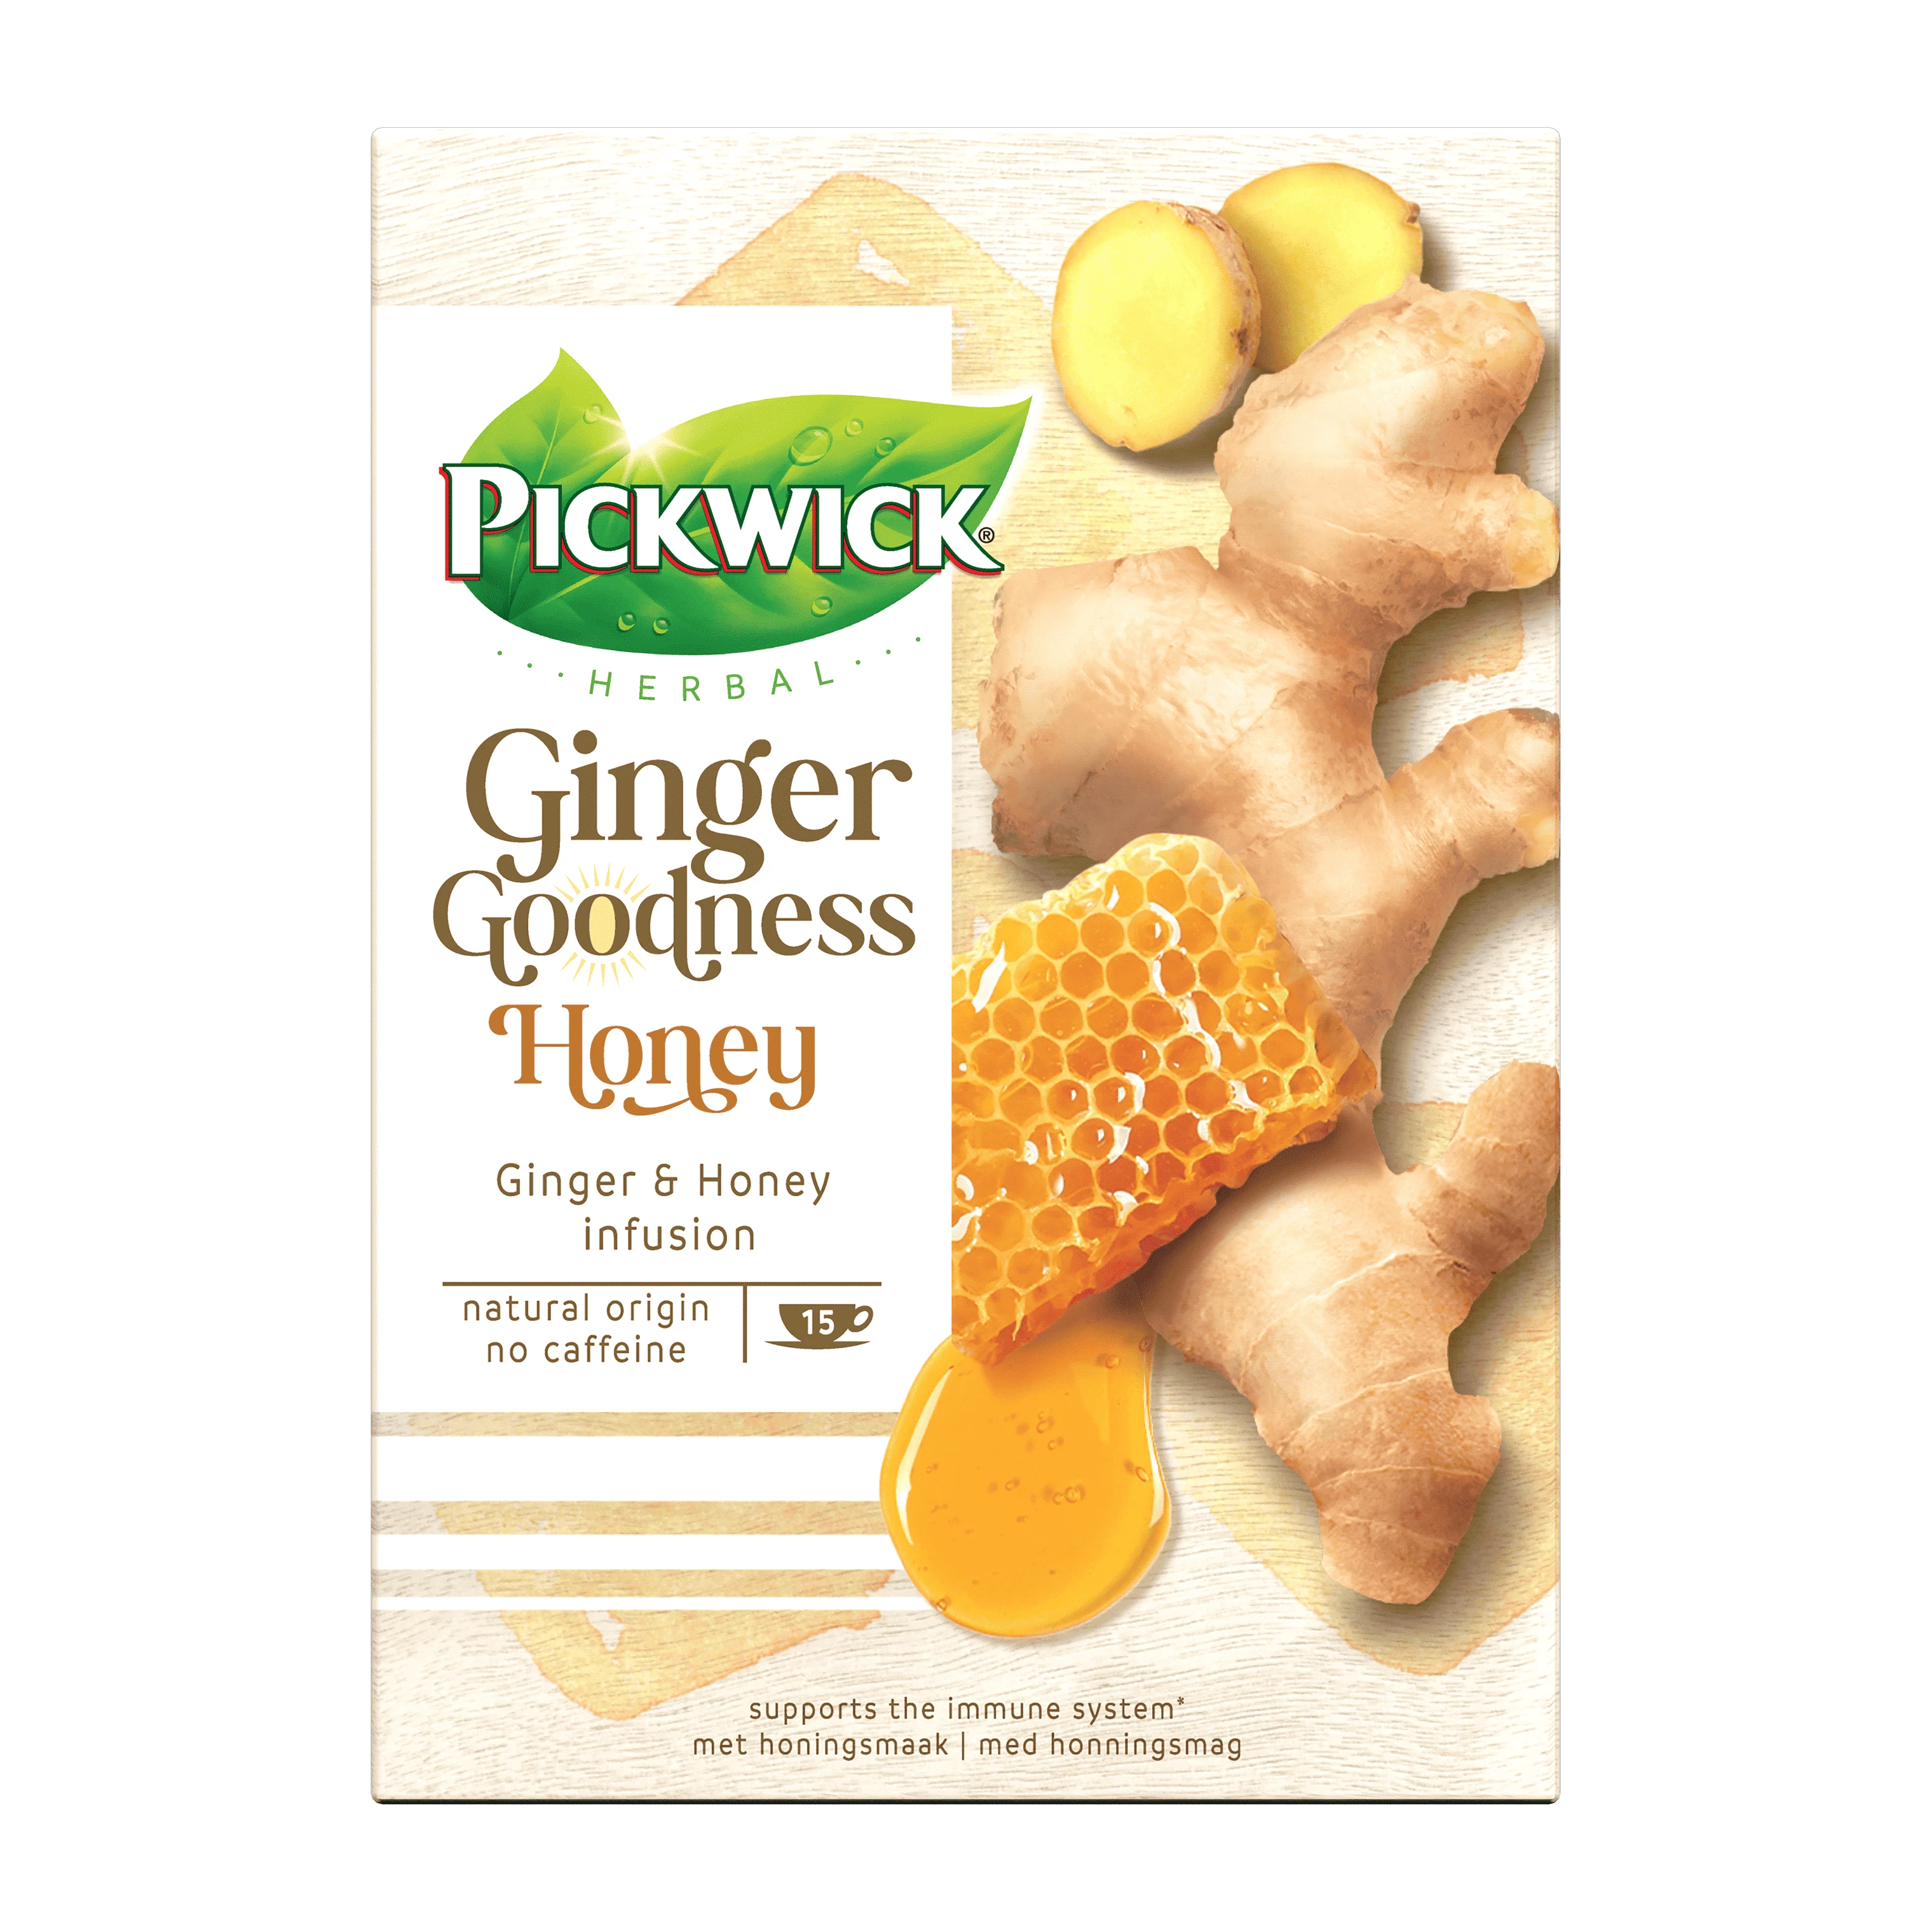 Verpakking Ginger Goodness Honey.